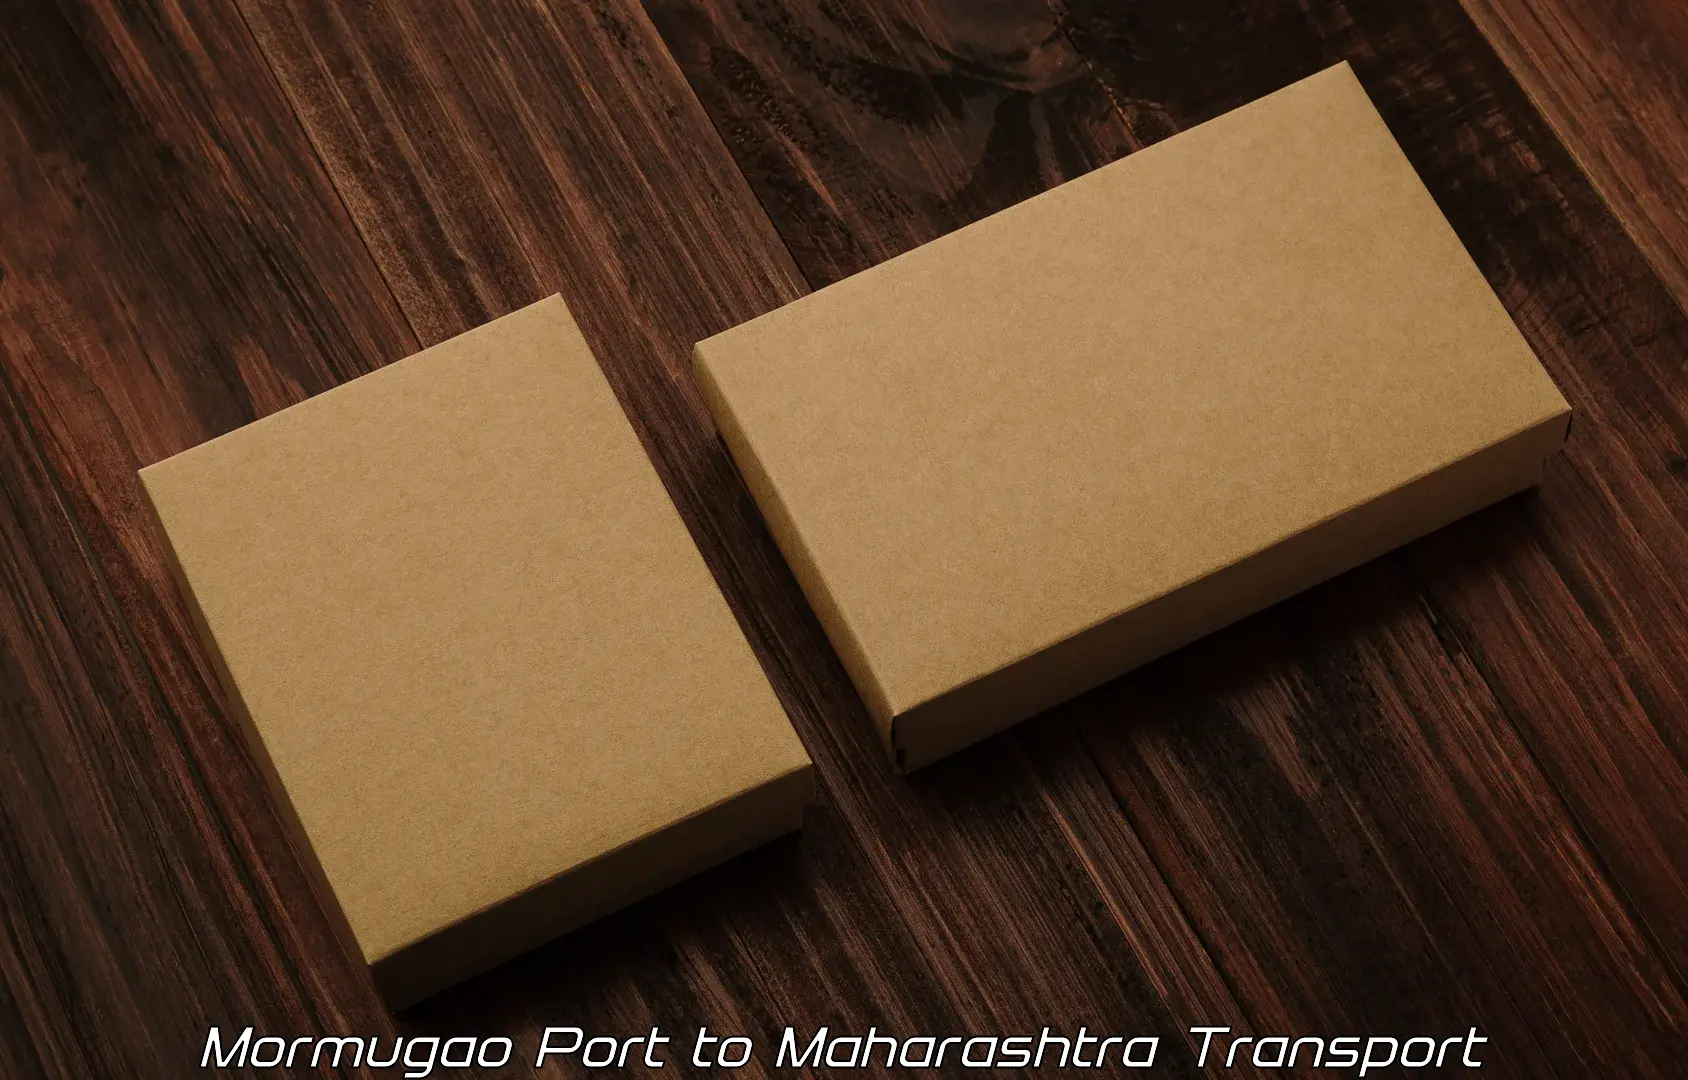 International cargo transportation services Mormugao Port to Tuljapur